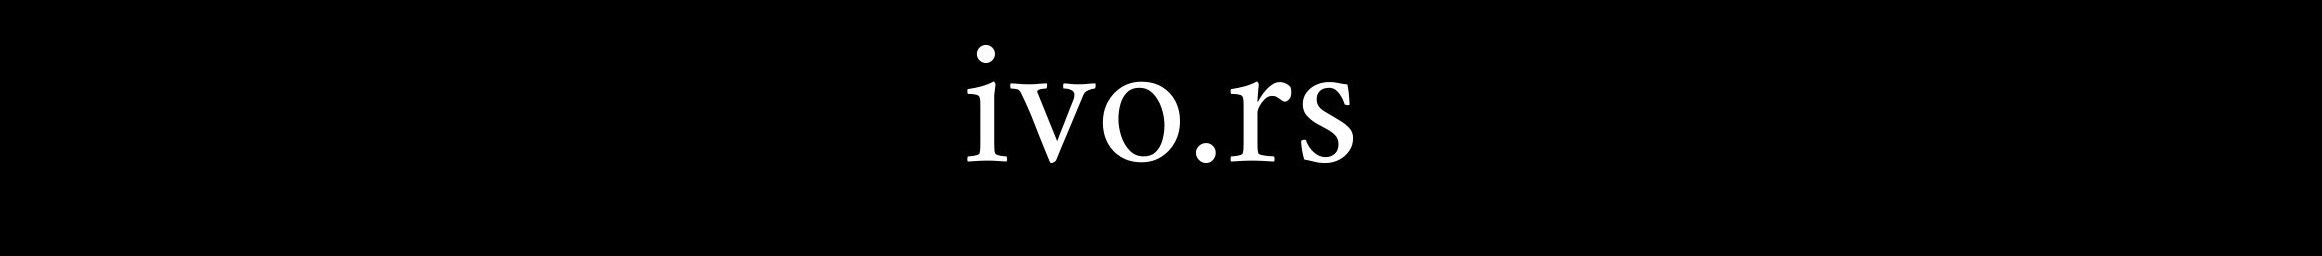 Ivo Rs profil başlığı